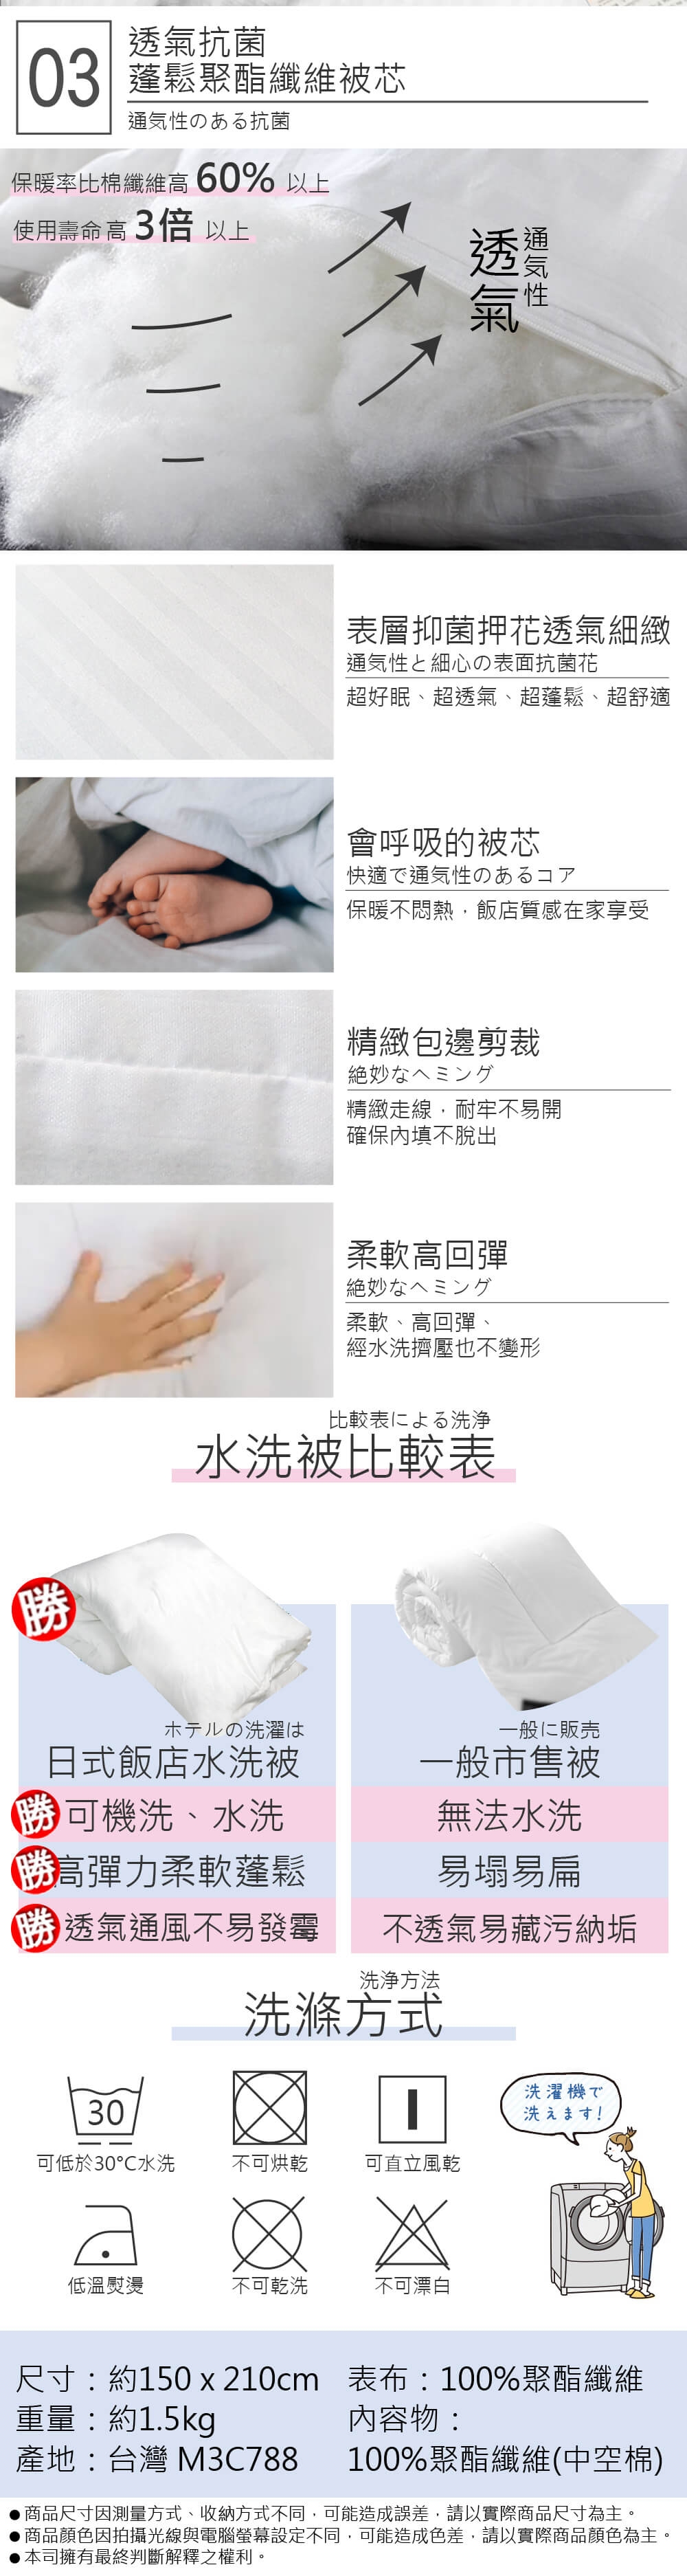 (買被送香氛花) You Can Buy 日式飯店指定使用 可水洗棉被